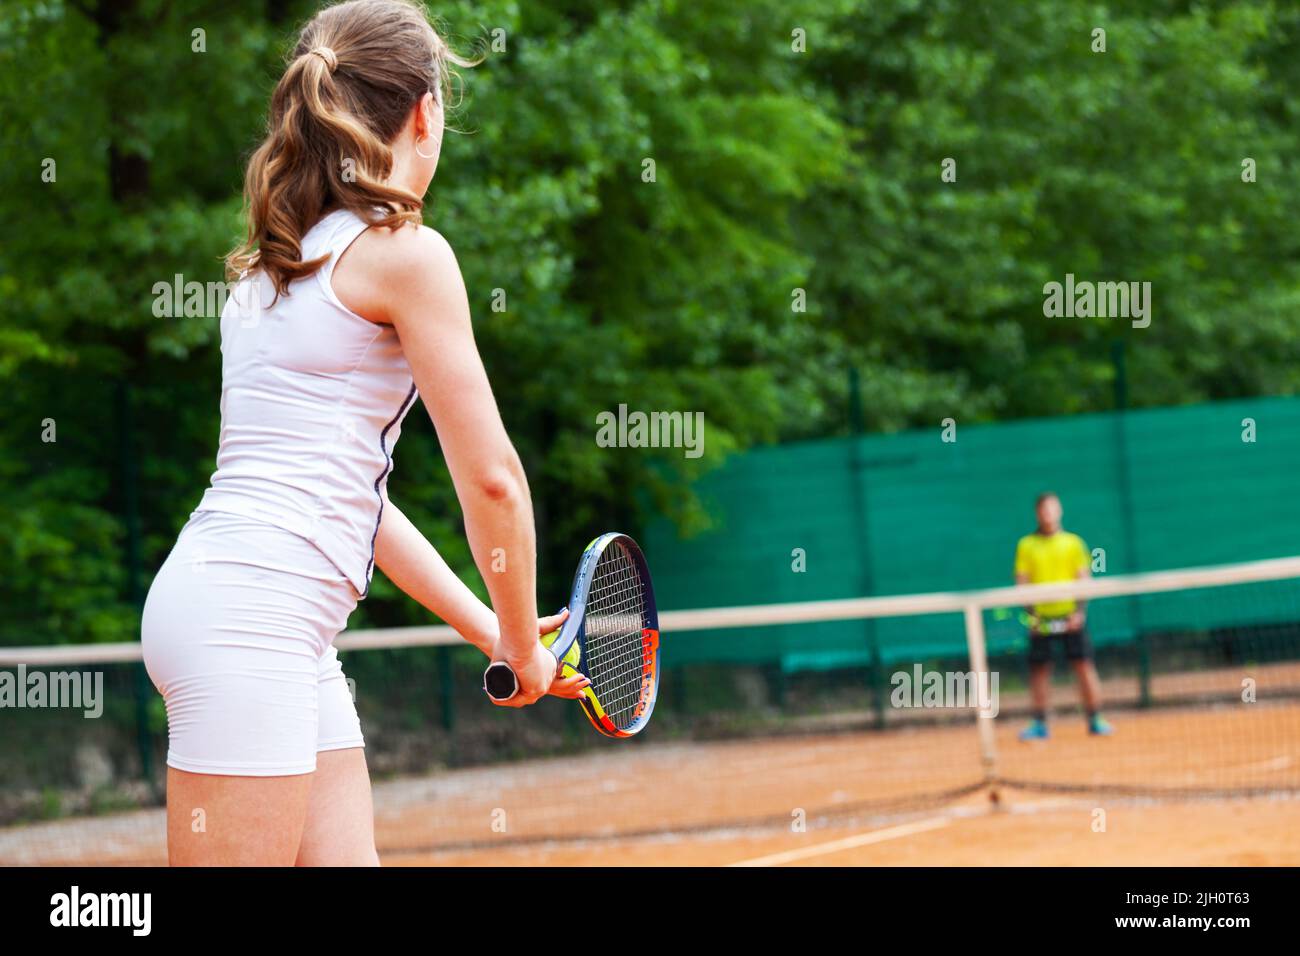 Jeunes et belles tennis player de servir. Banque D'Images